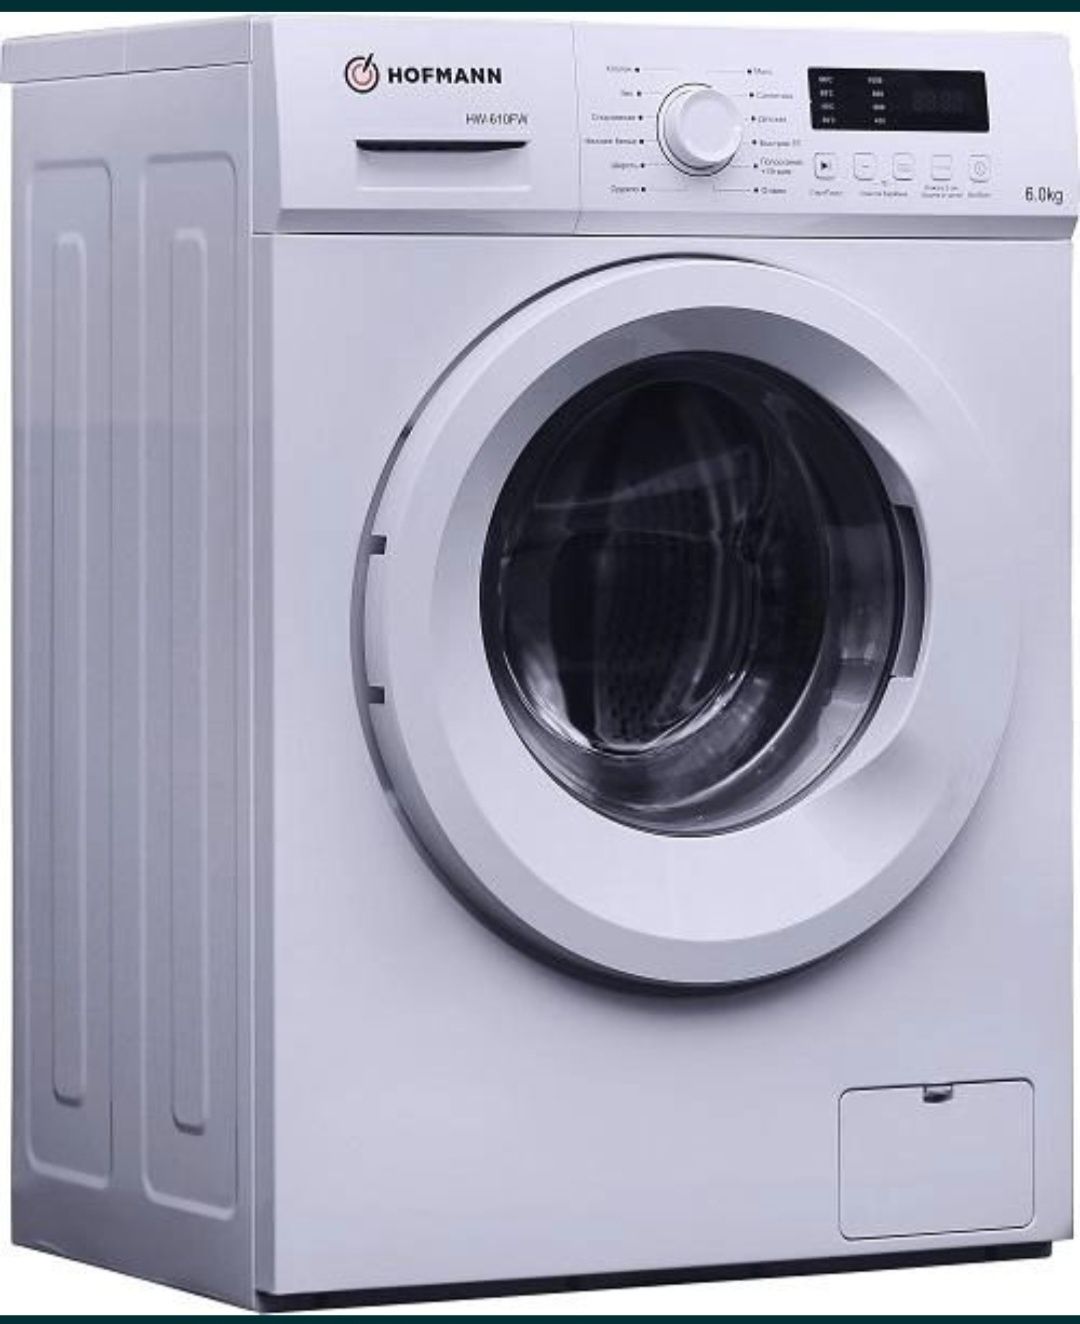 HOFMANN Invertor стиральная машина 6кг бесплатной доставкой